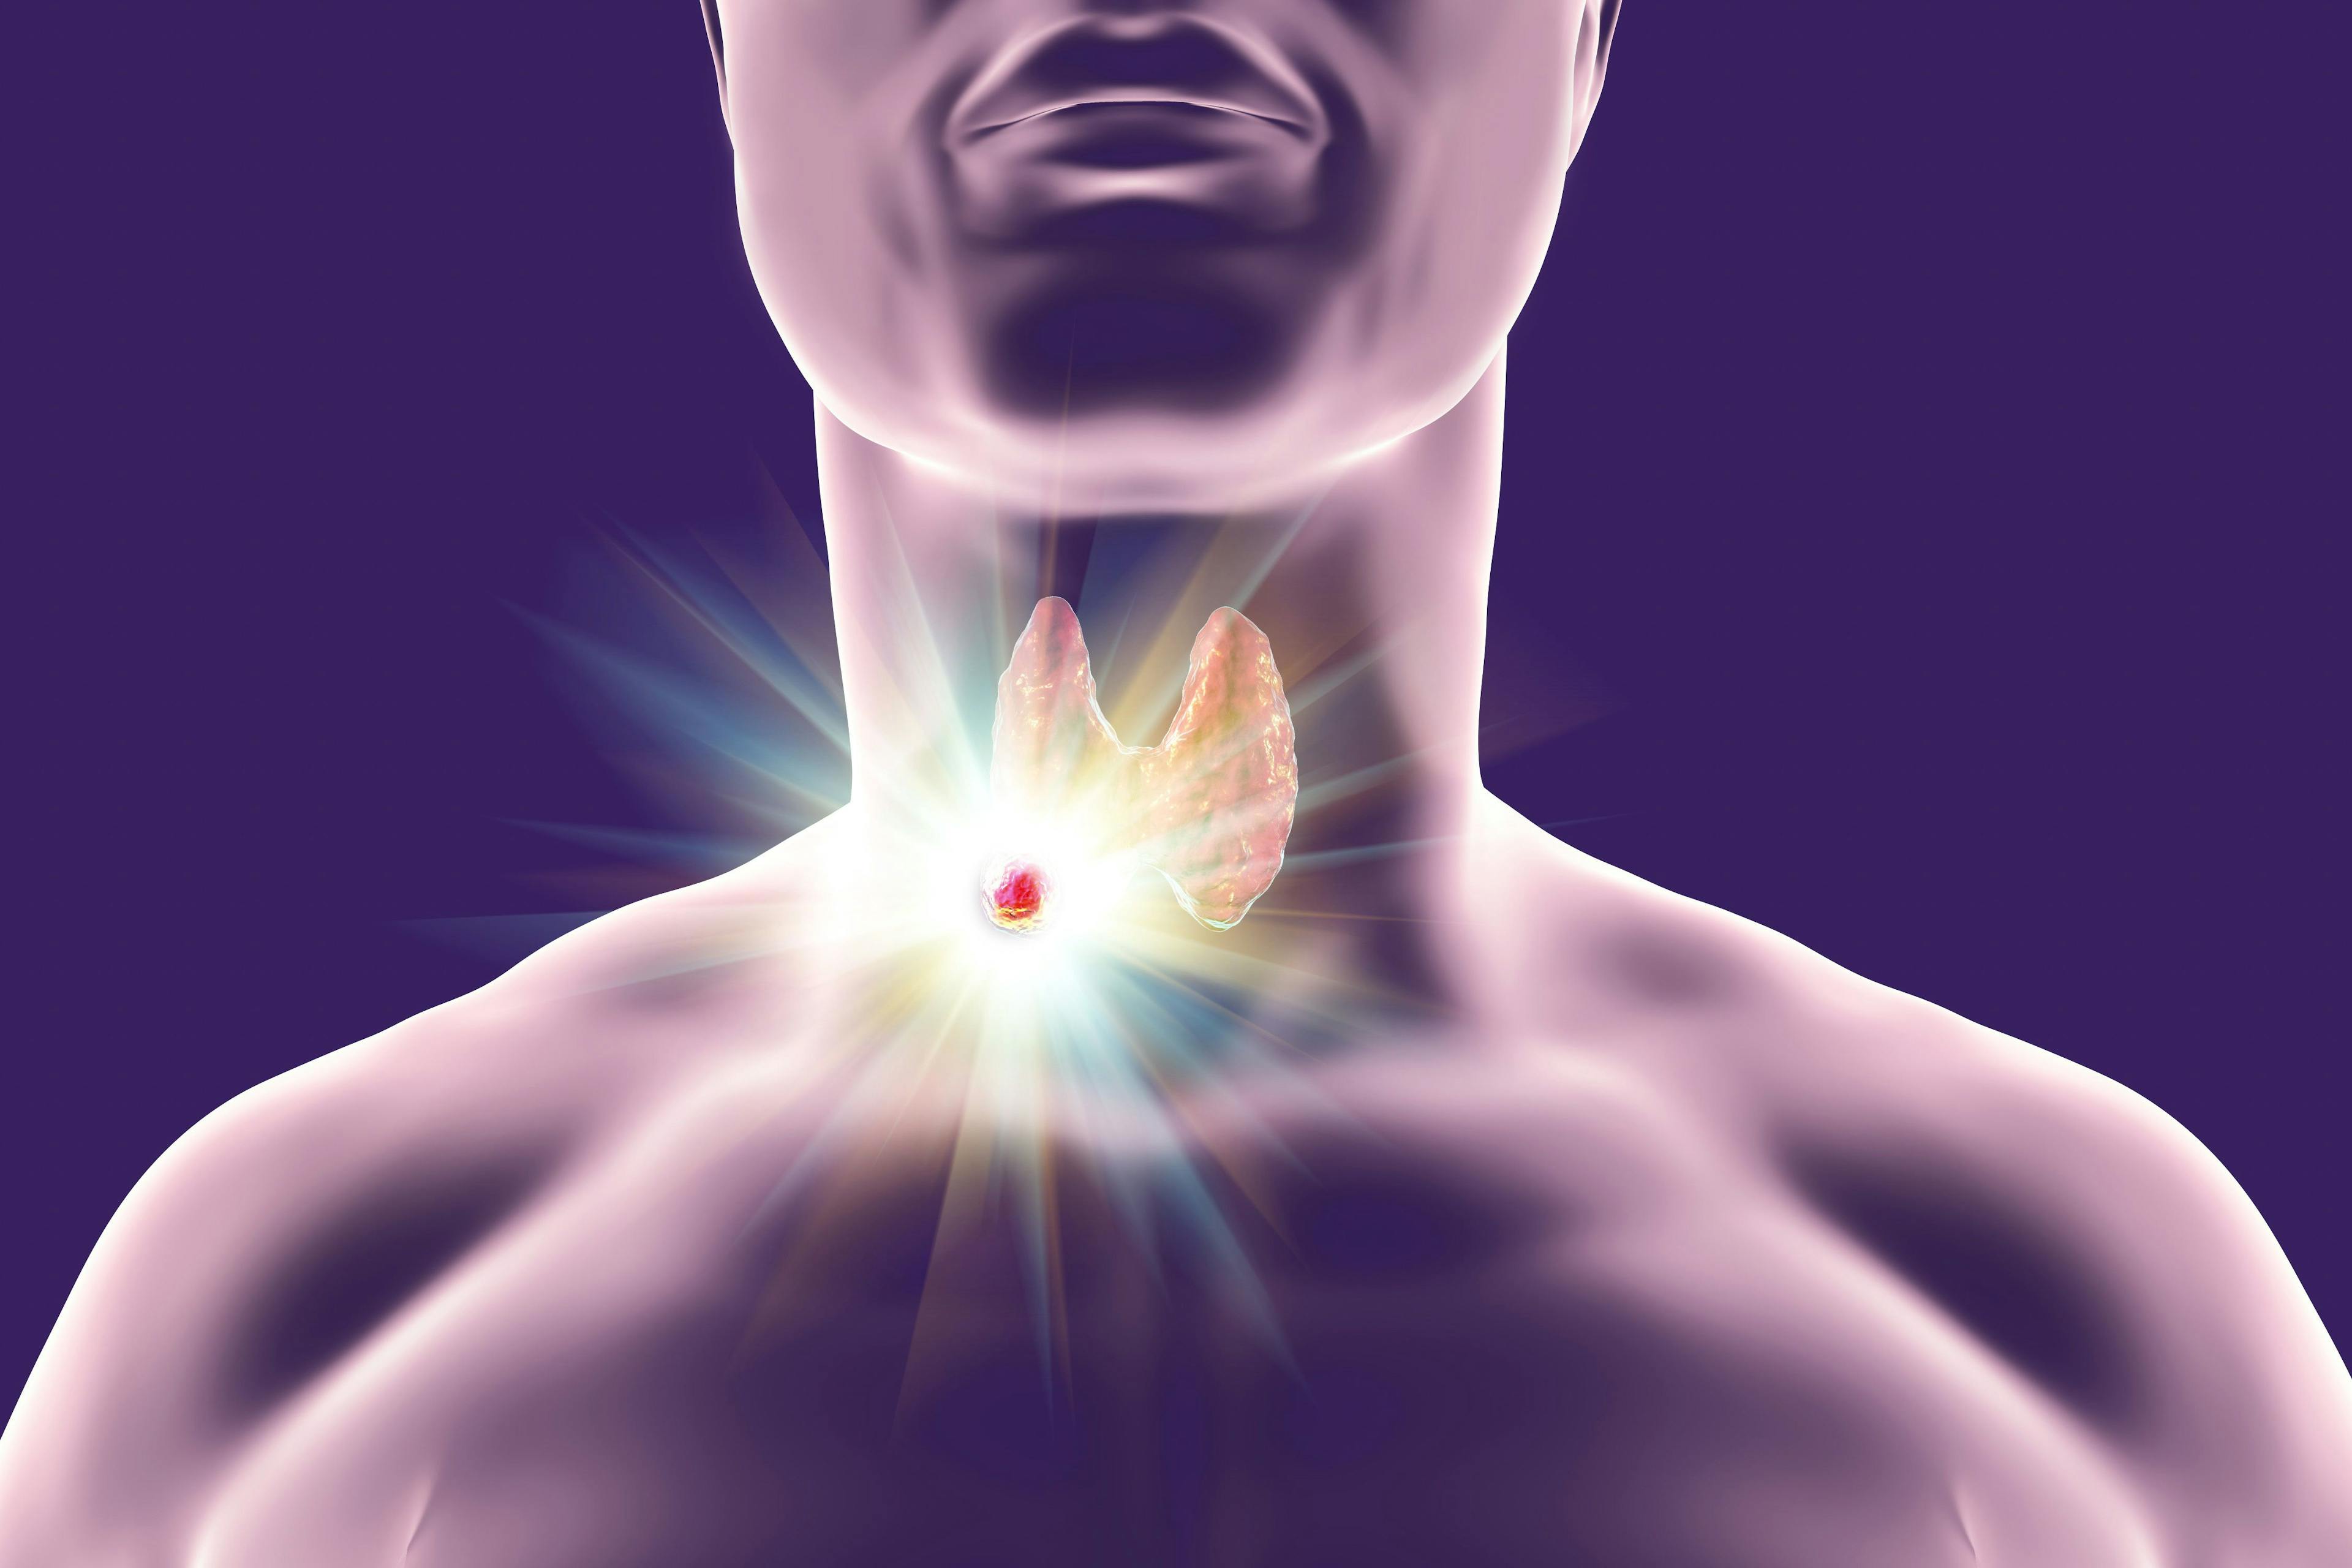 present tumor on thyroid